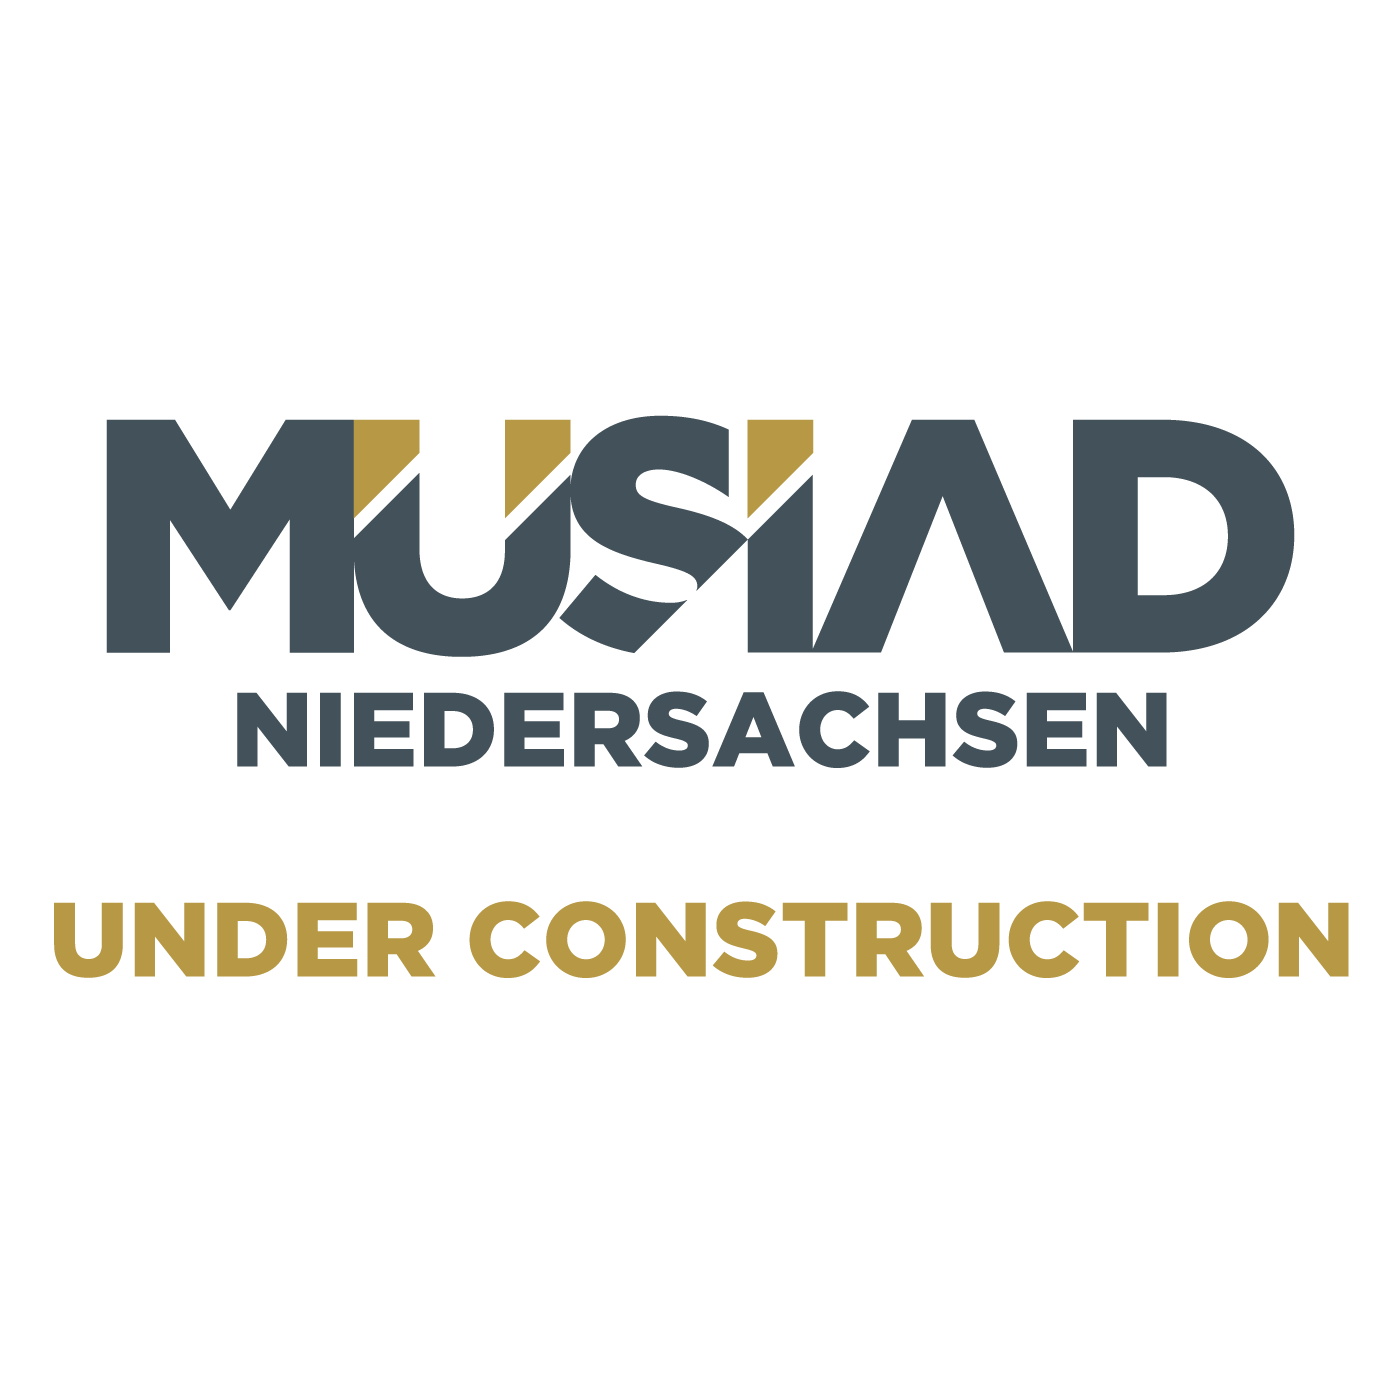 Musiad Niedersachsen